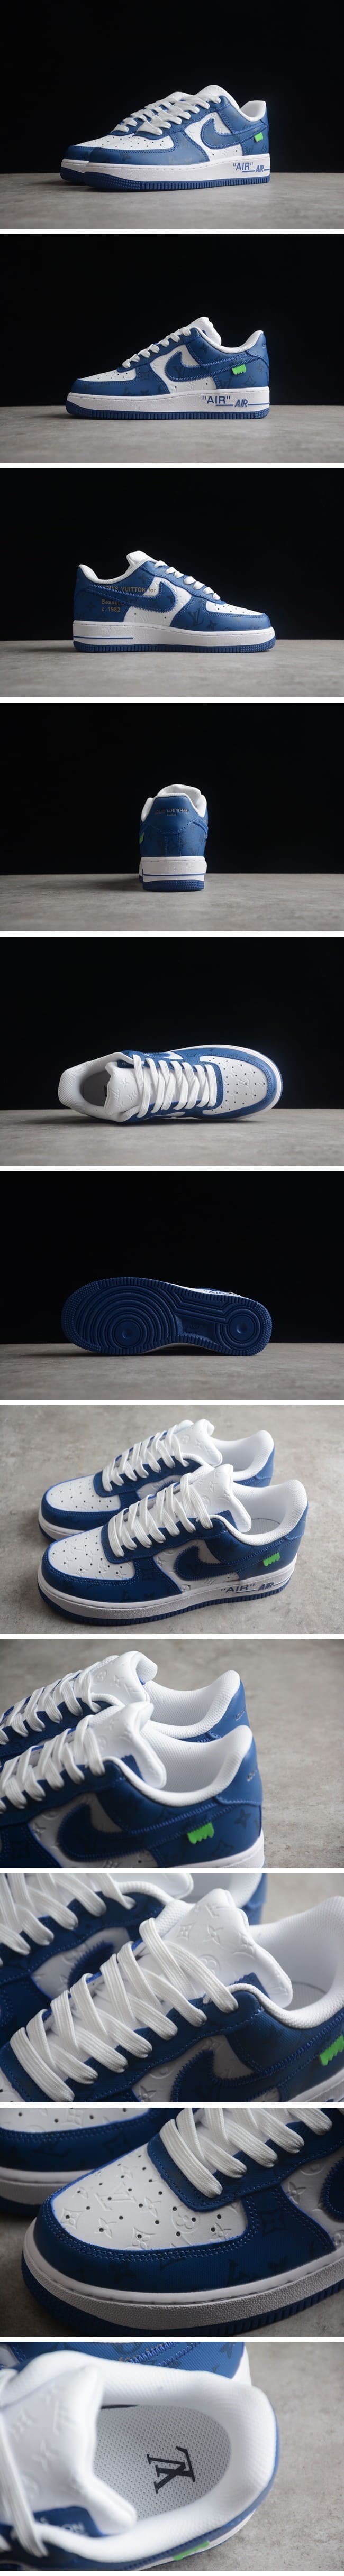 【期間限定】Louis Vuitton Nike Air Force 1 Low By Virgil Abloh White Blue ルイ・ヴィトン x ナイキエアフォース1 ローバイヴァージルアブロー ホワイト/ブルー